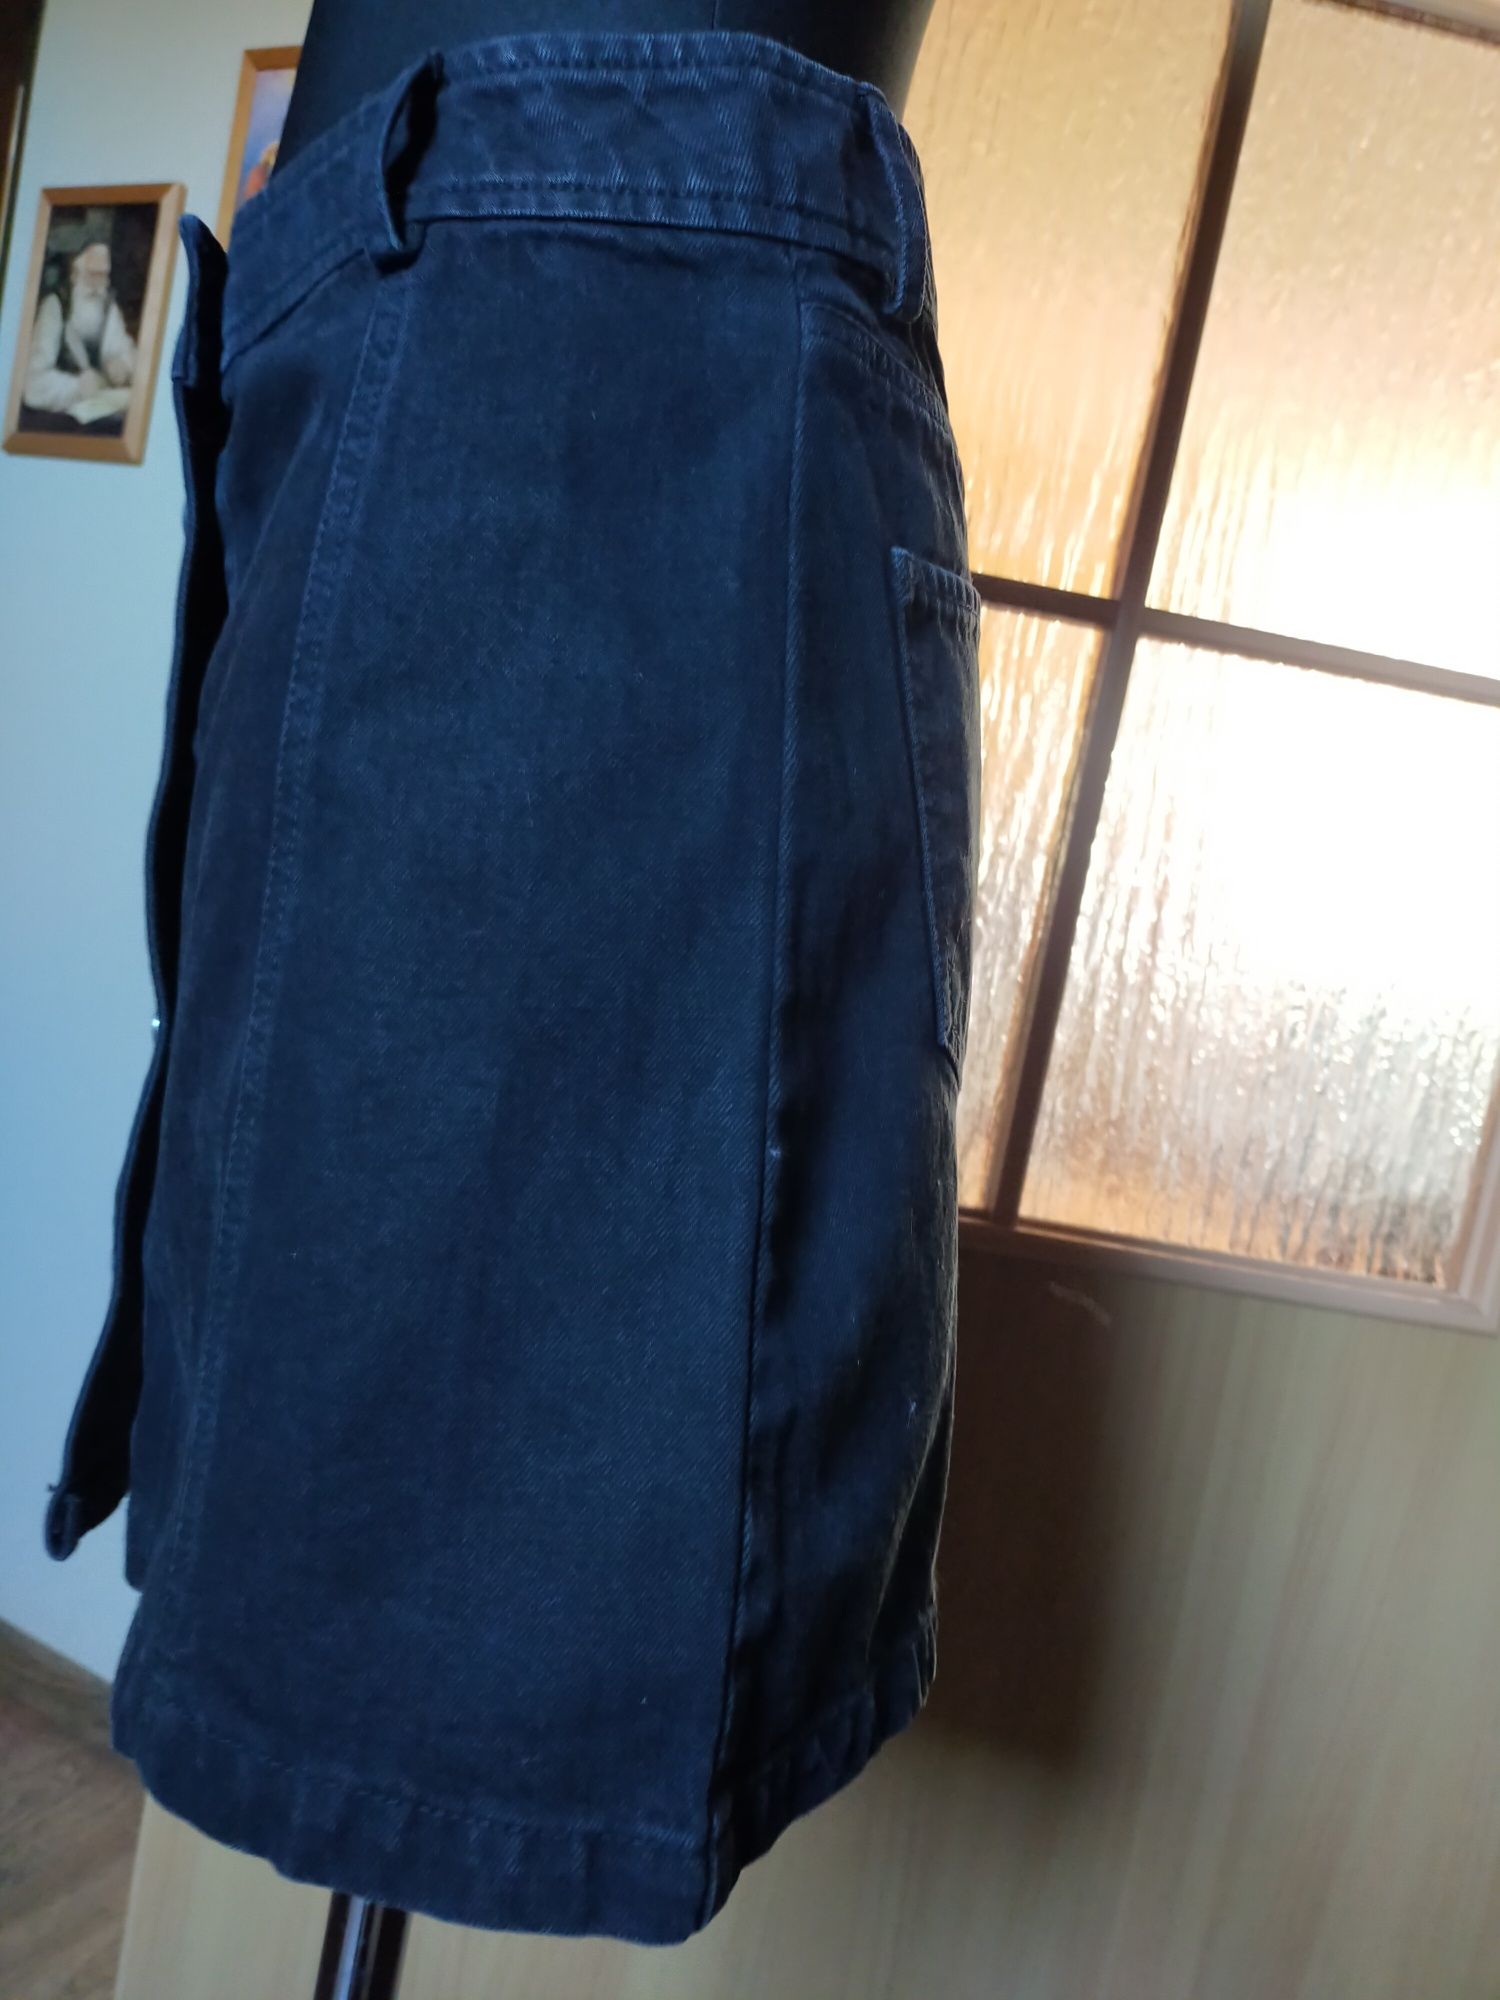 Spódnica jeansowa jeans czarna guziki Jane Norman rozmiar 36 S